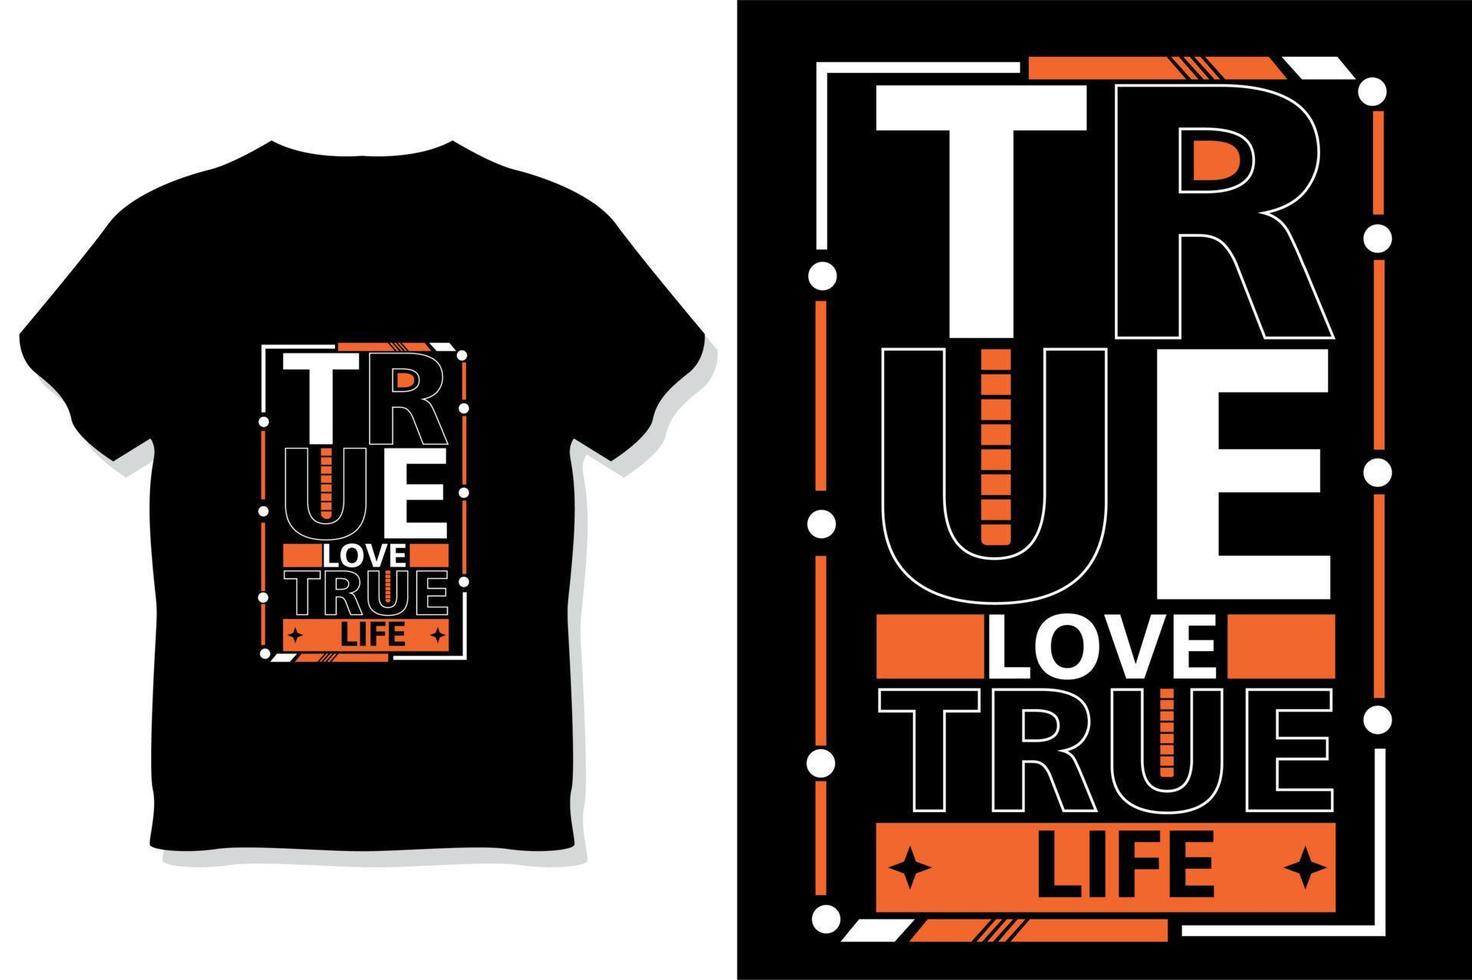 amor verdadeiro vida verdadeira citações motivacionais tipografia design de camiseta vetor